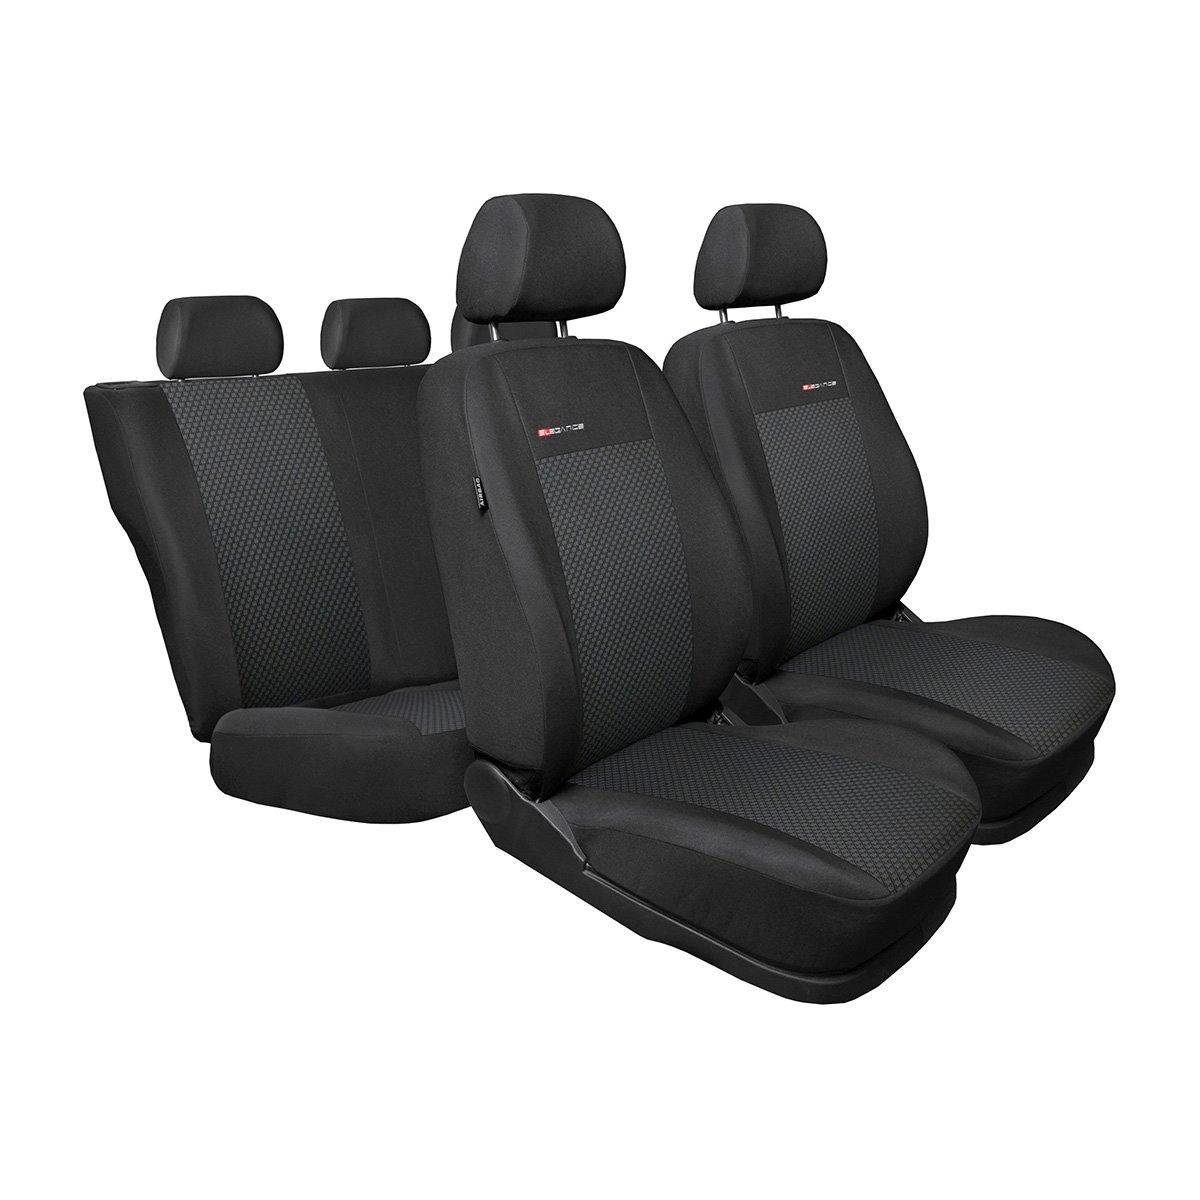 Mossa - Maßgeschneiderte Sitzbezüge Auto kompatibel mit Chevrolet Aveo III T300 Hatchback, Limousine (2011-2018) - Autositzbezüge Schonbezüge für Autositze - E3 von Mossa